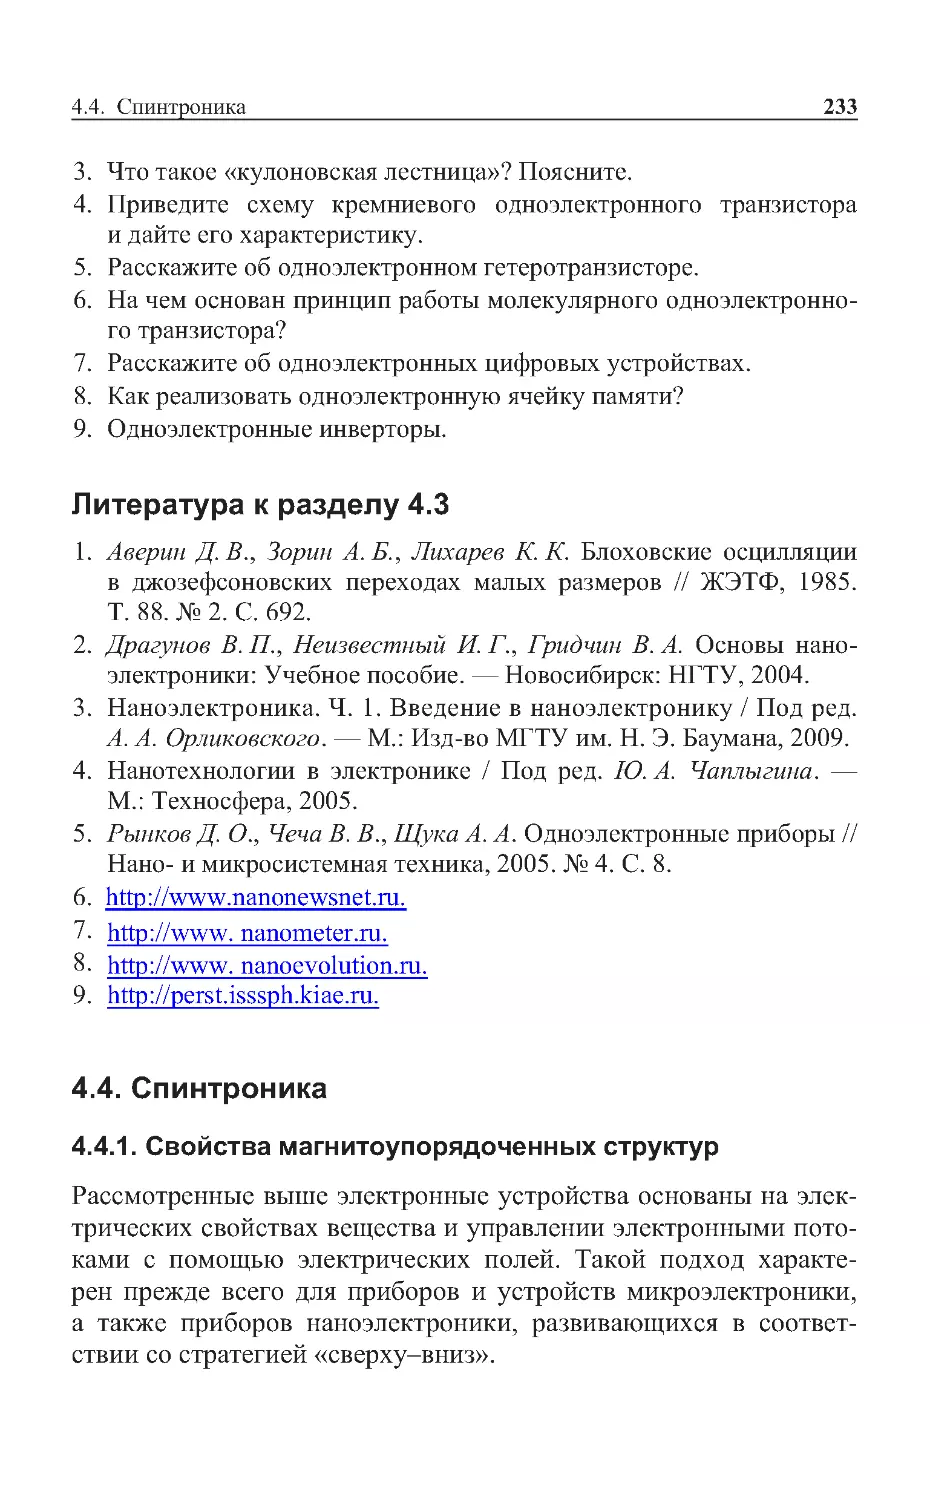 Литература к разделу 4.3
4.4. Спинтроника
4.4.1. Свойства магнитоупорядоченных структур